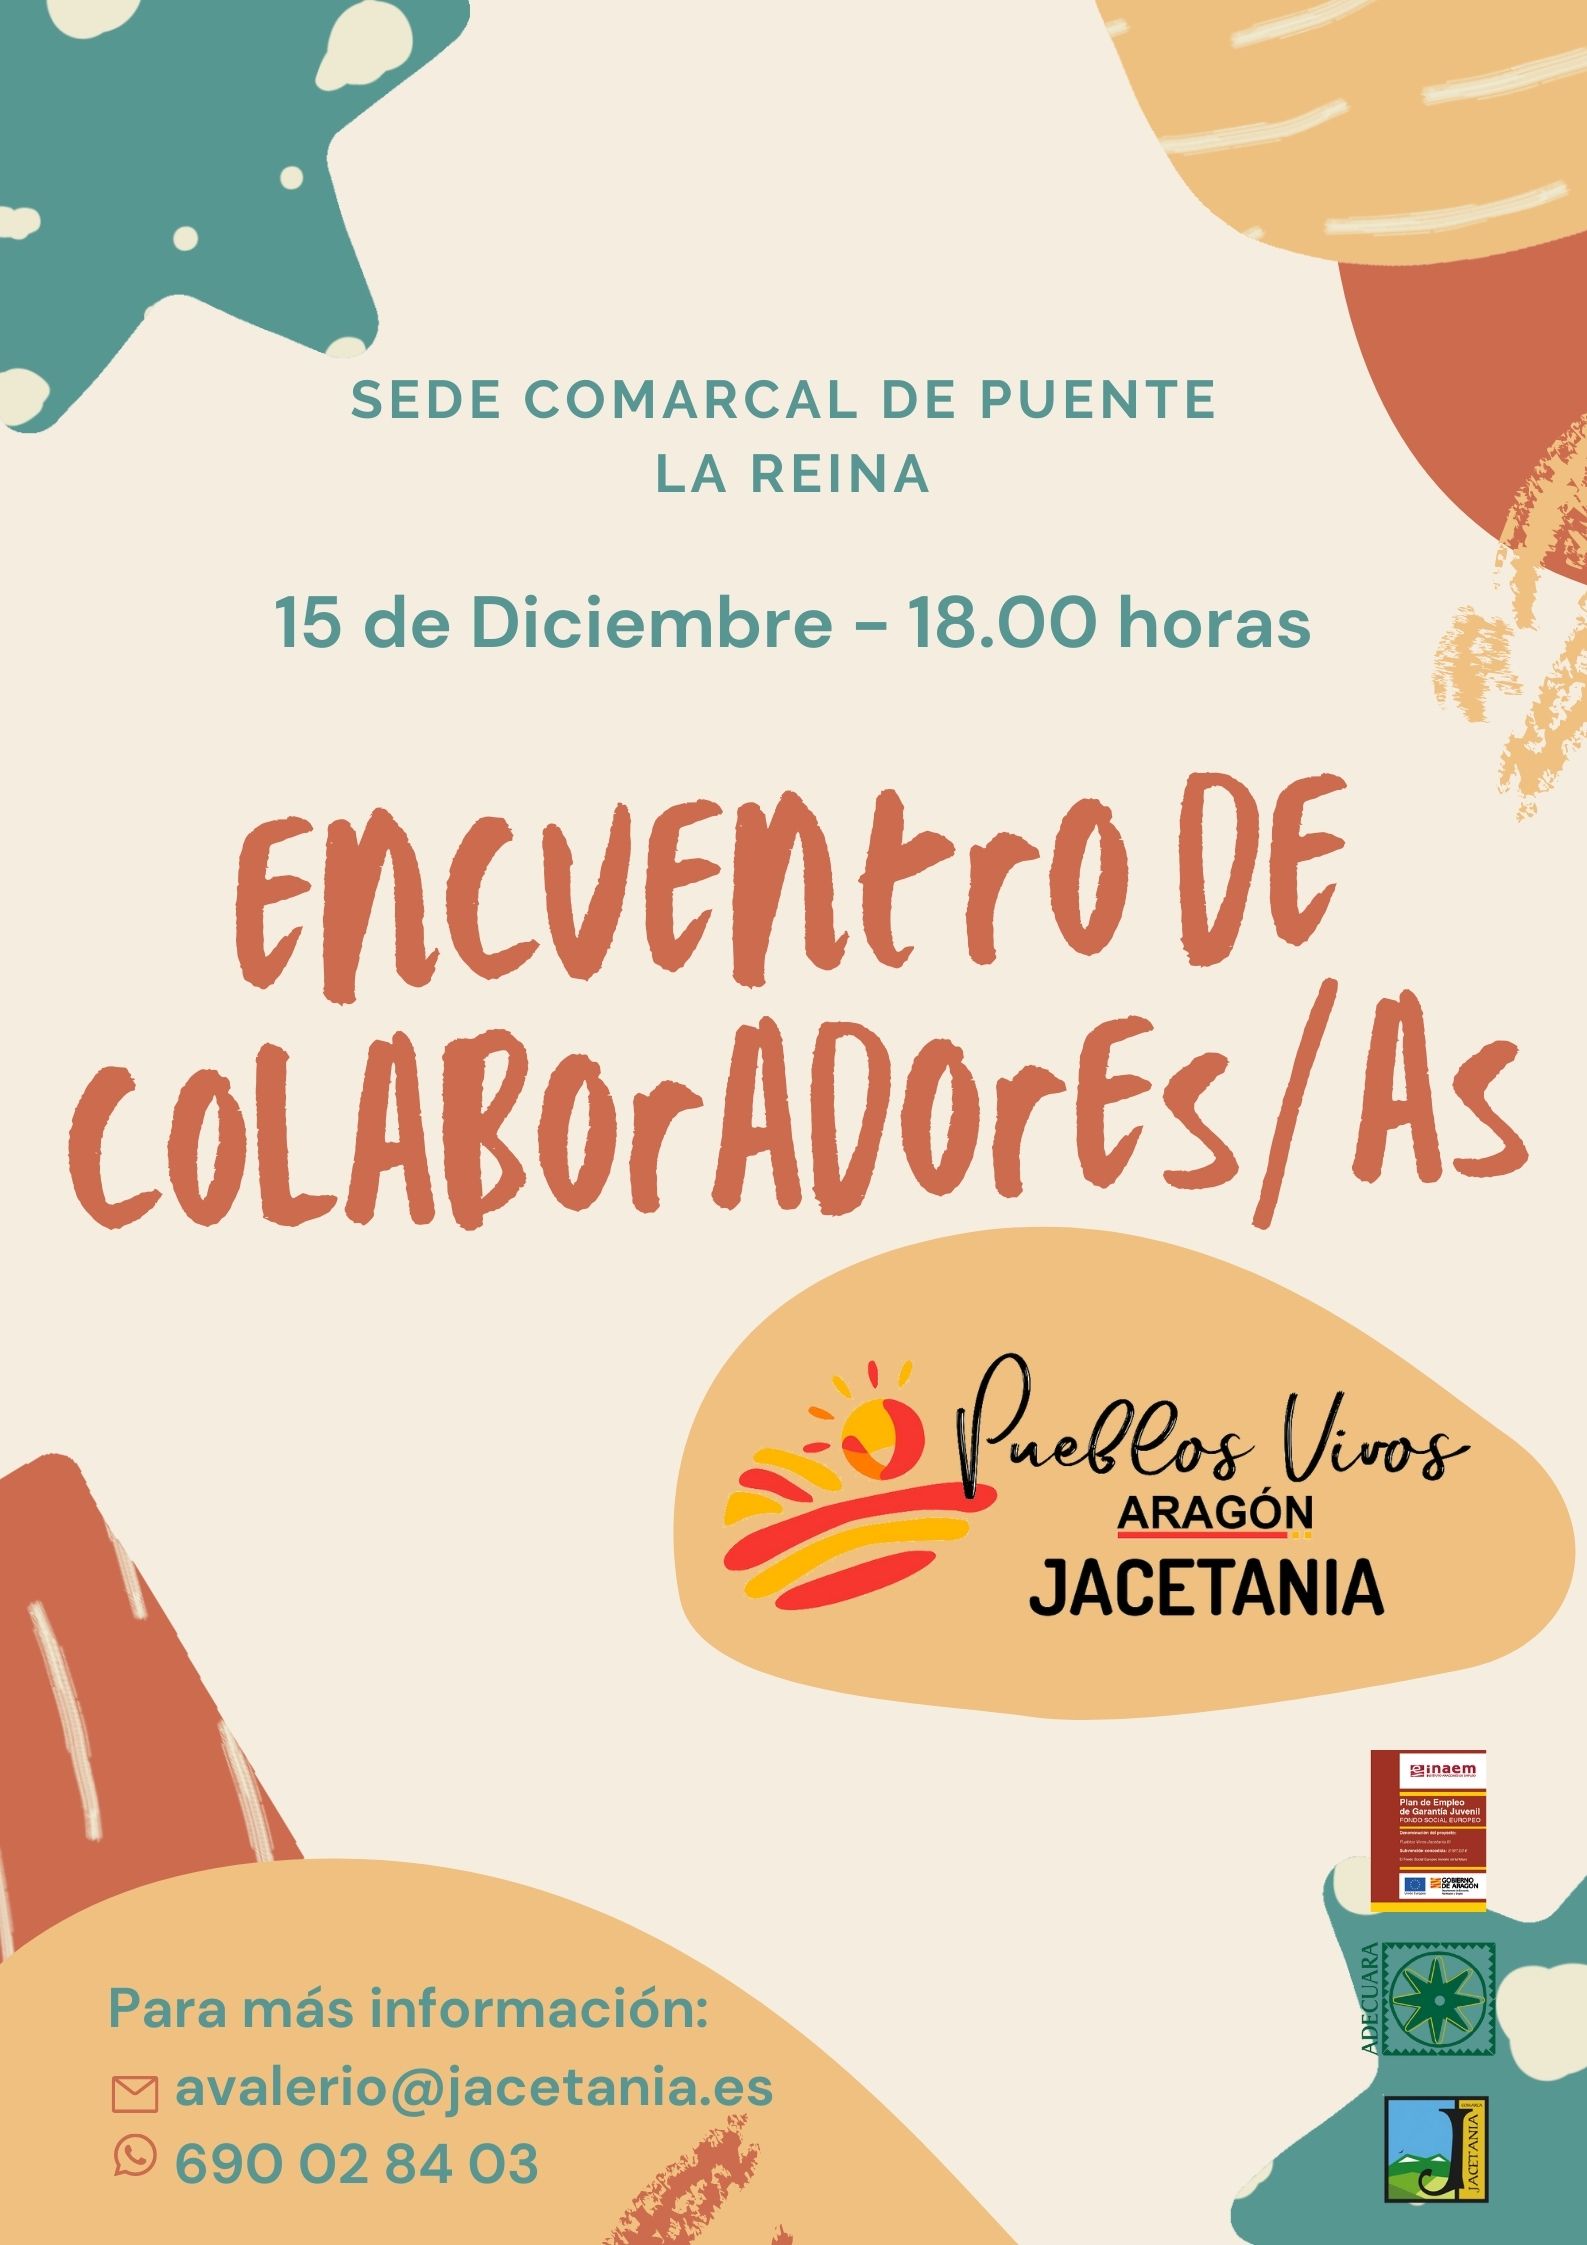 Encuentro de colaboradores/as de Pueblos Vivos Jacetania